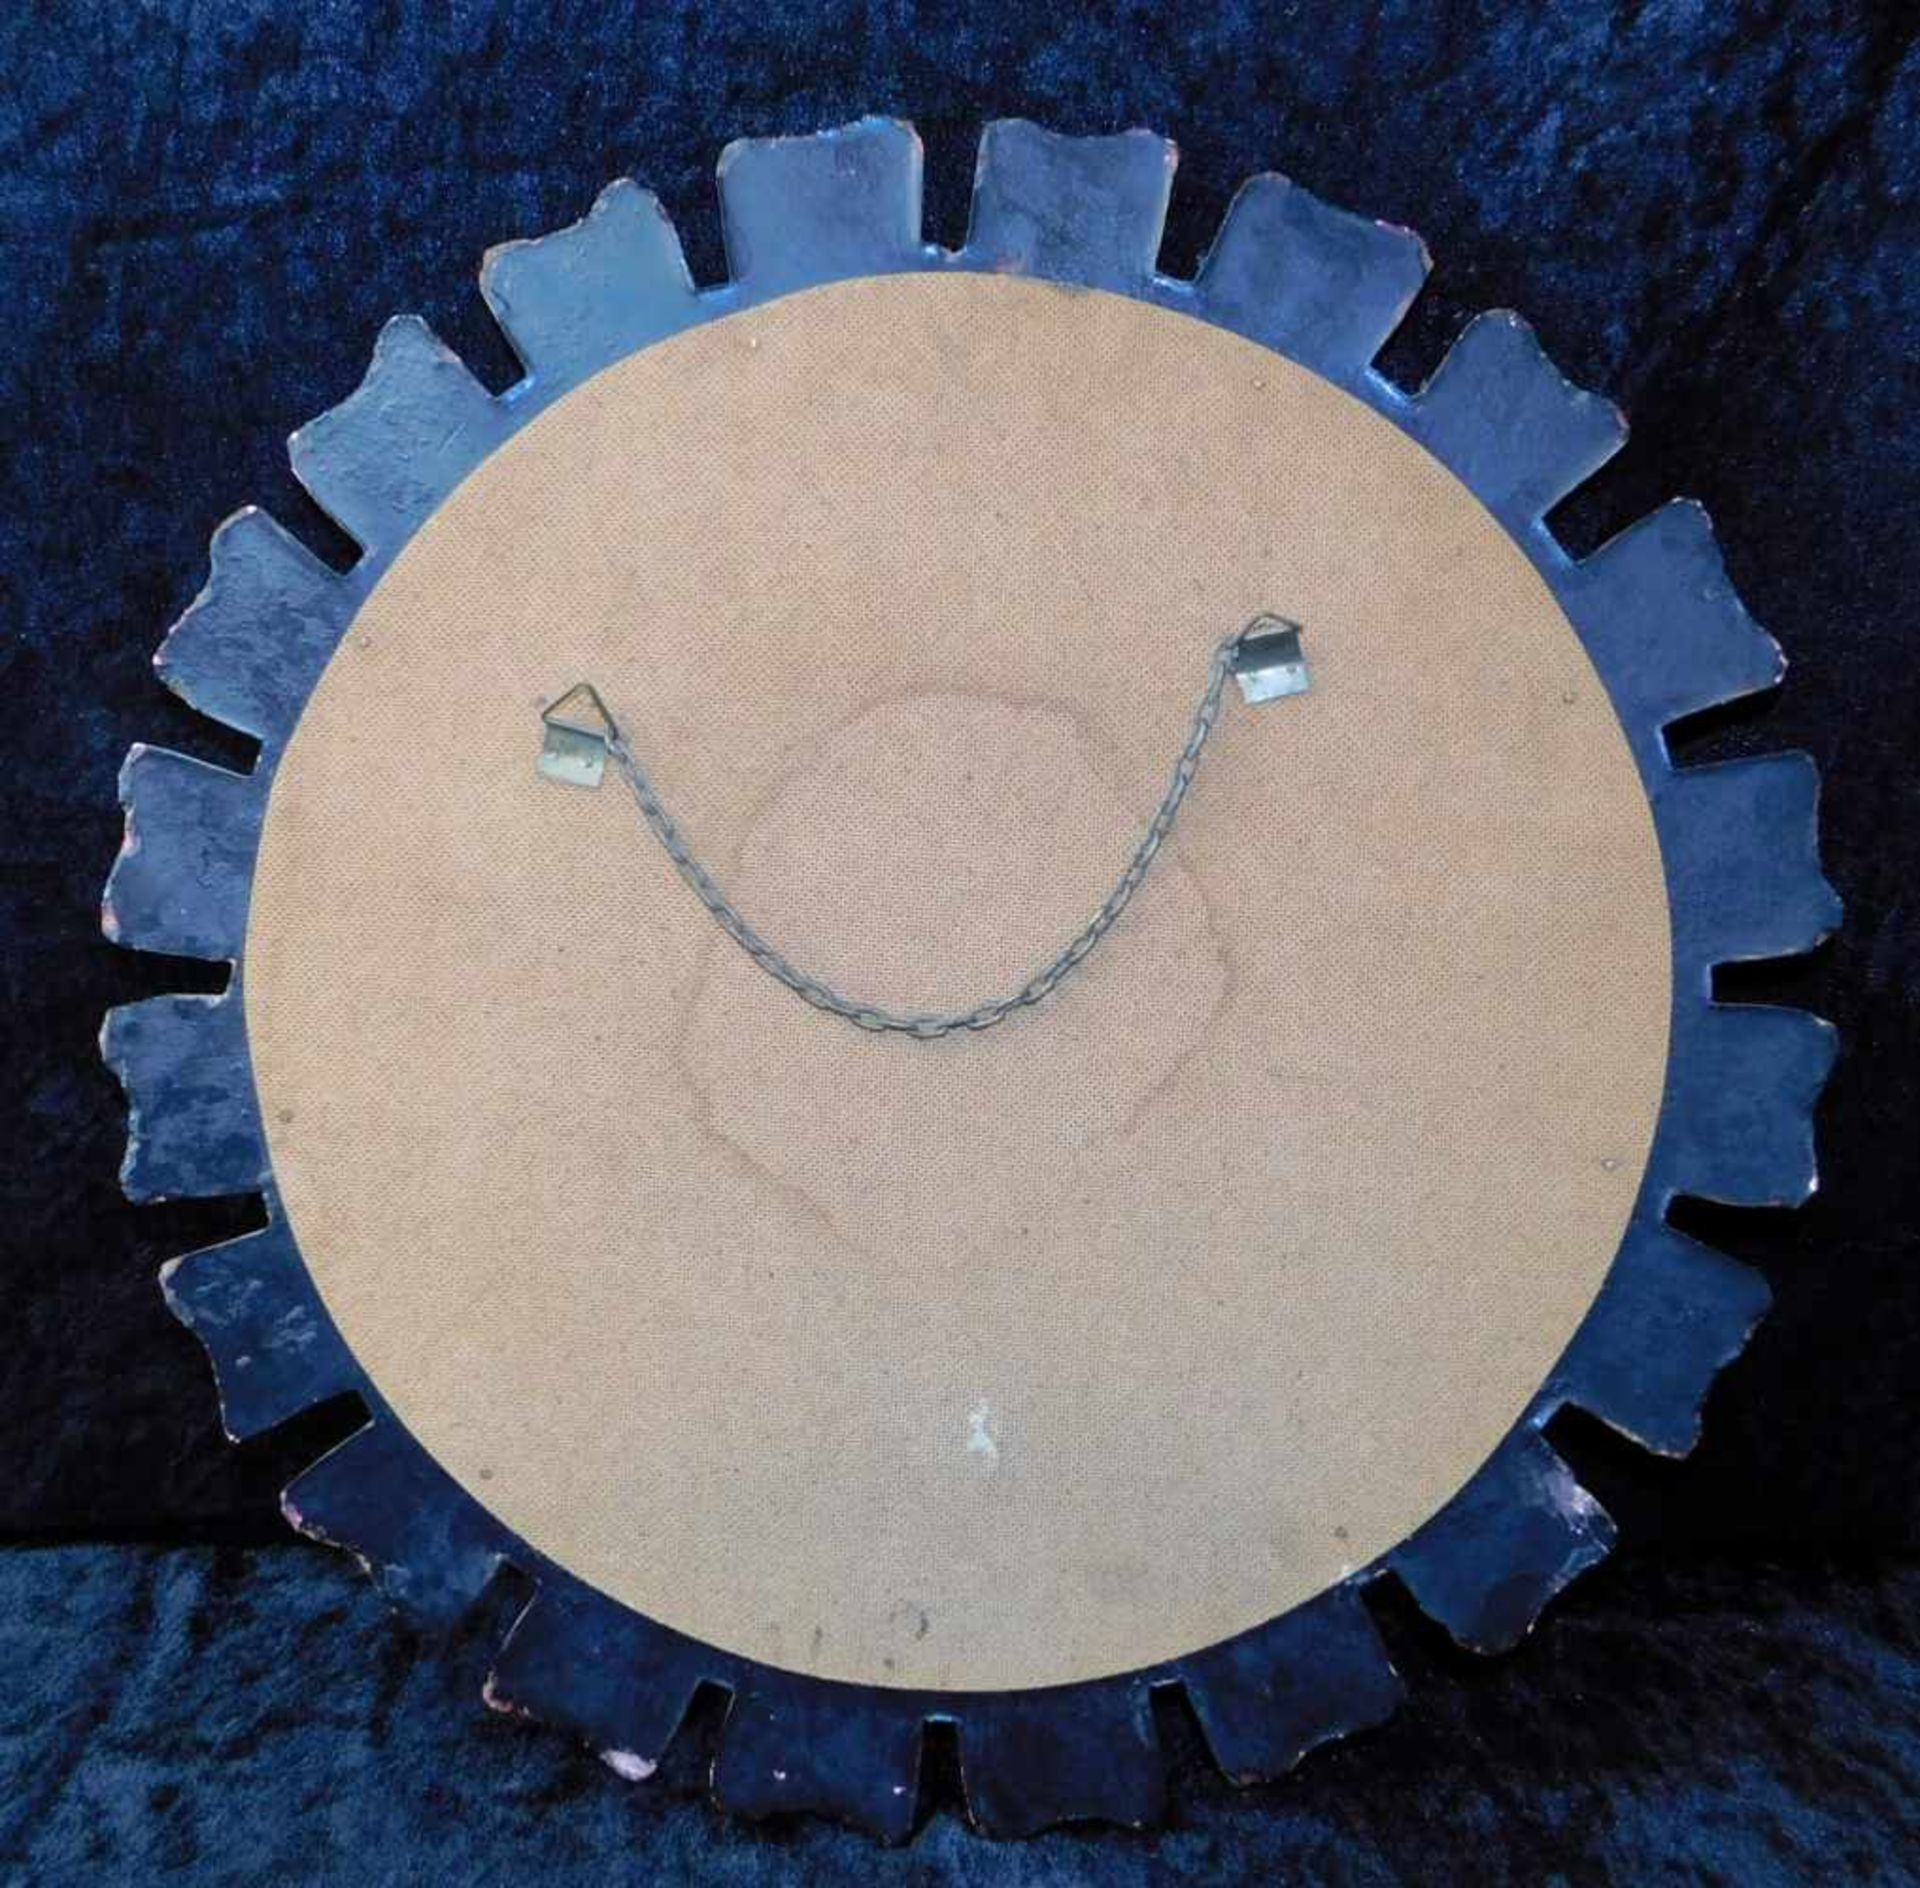 Strahlen-Spiegel, Rahmen goldbronziert, Spiegel konvex, 2. H. 20. Jhdt., Durchmesser 45 cm - Bild 2 aus 2